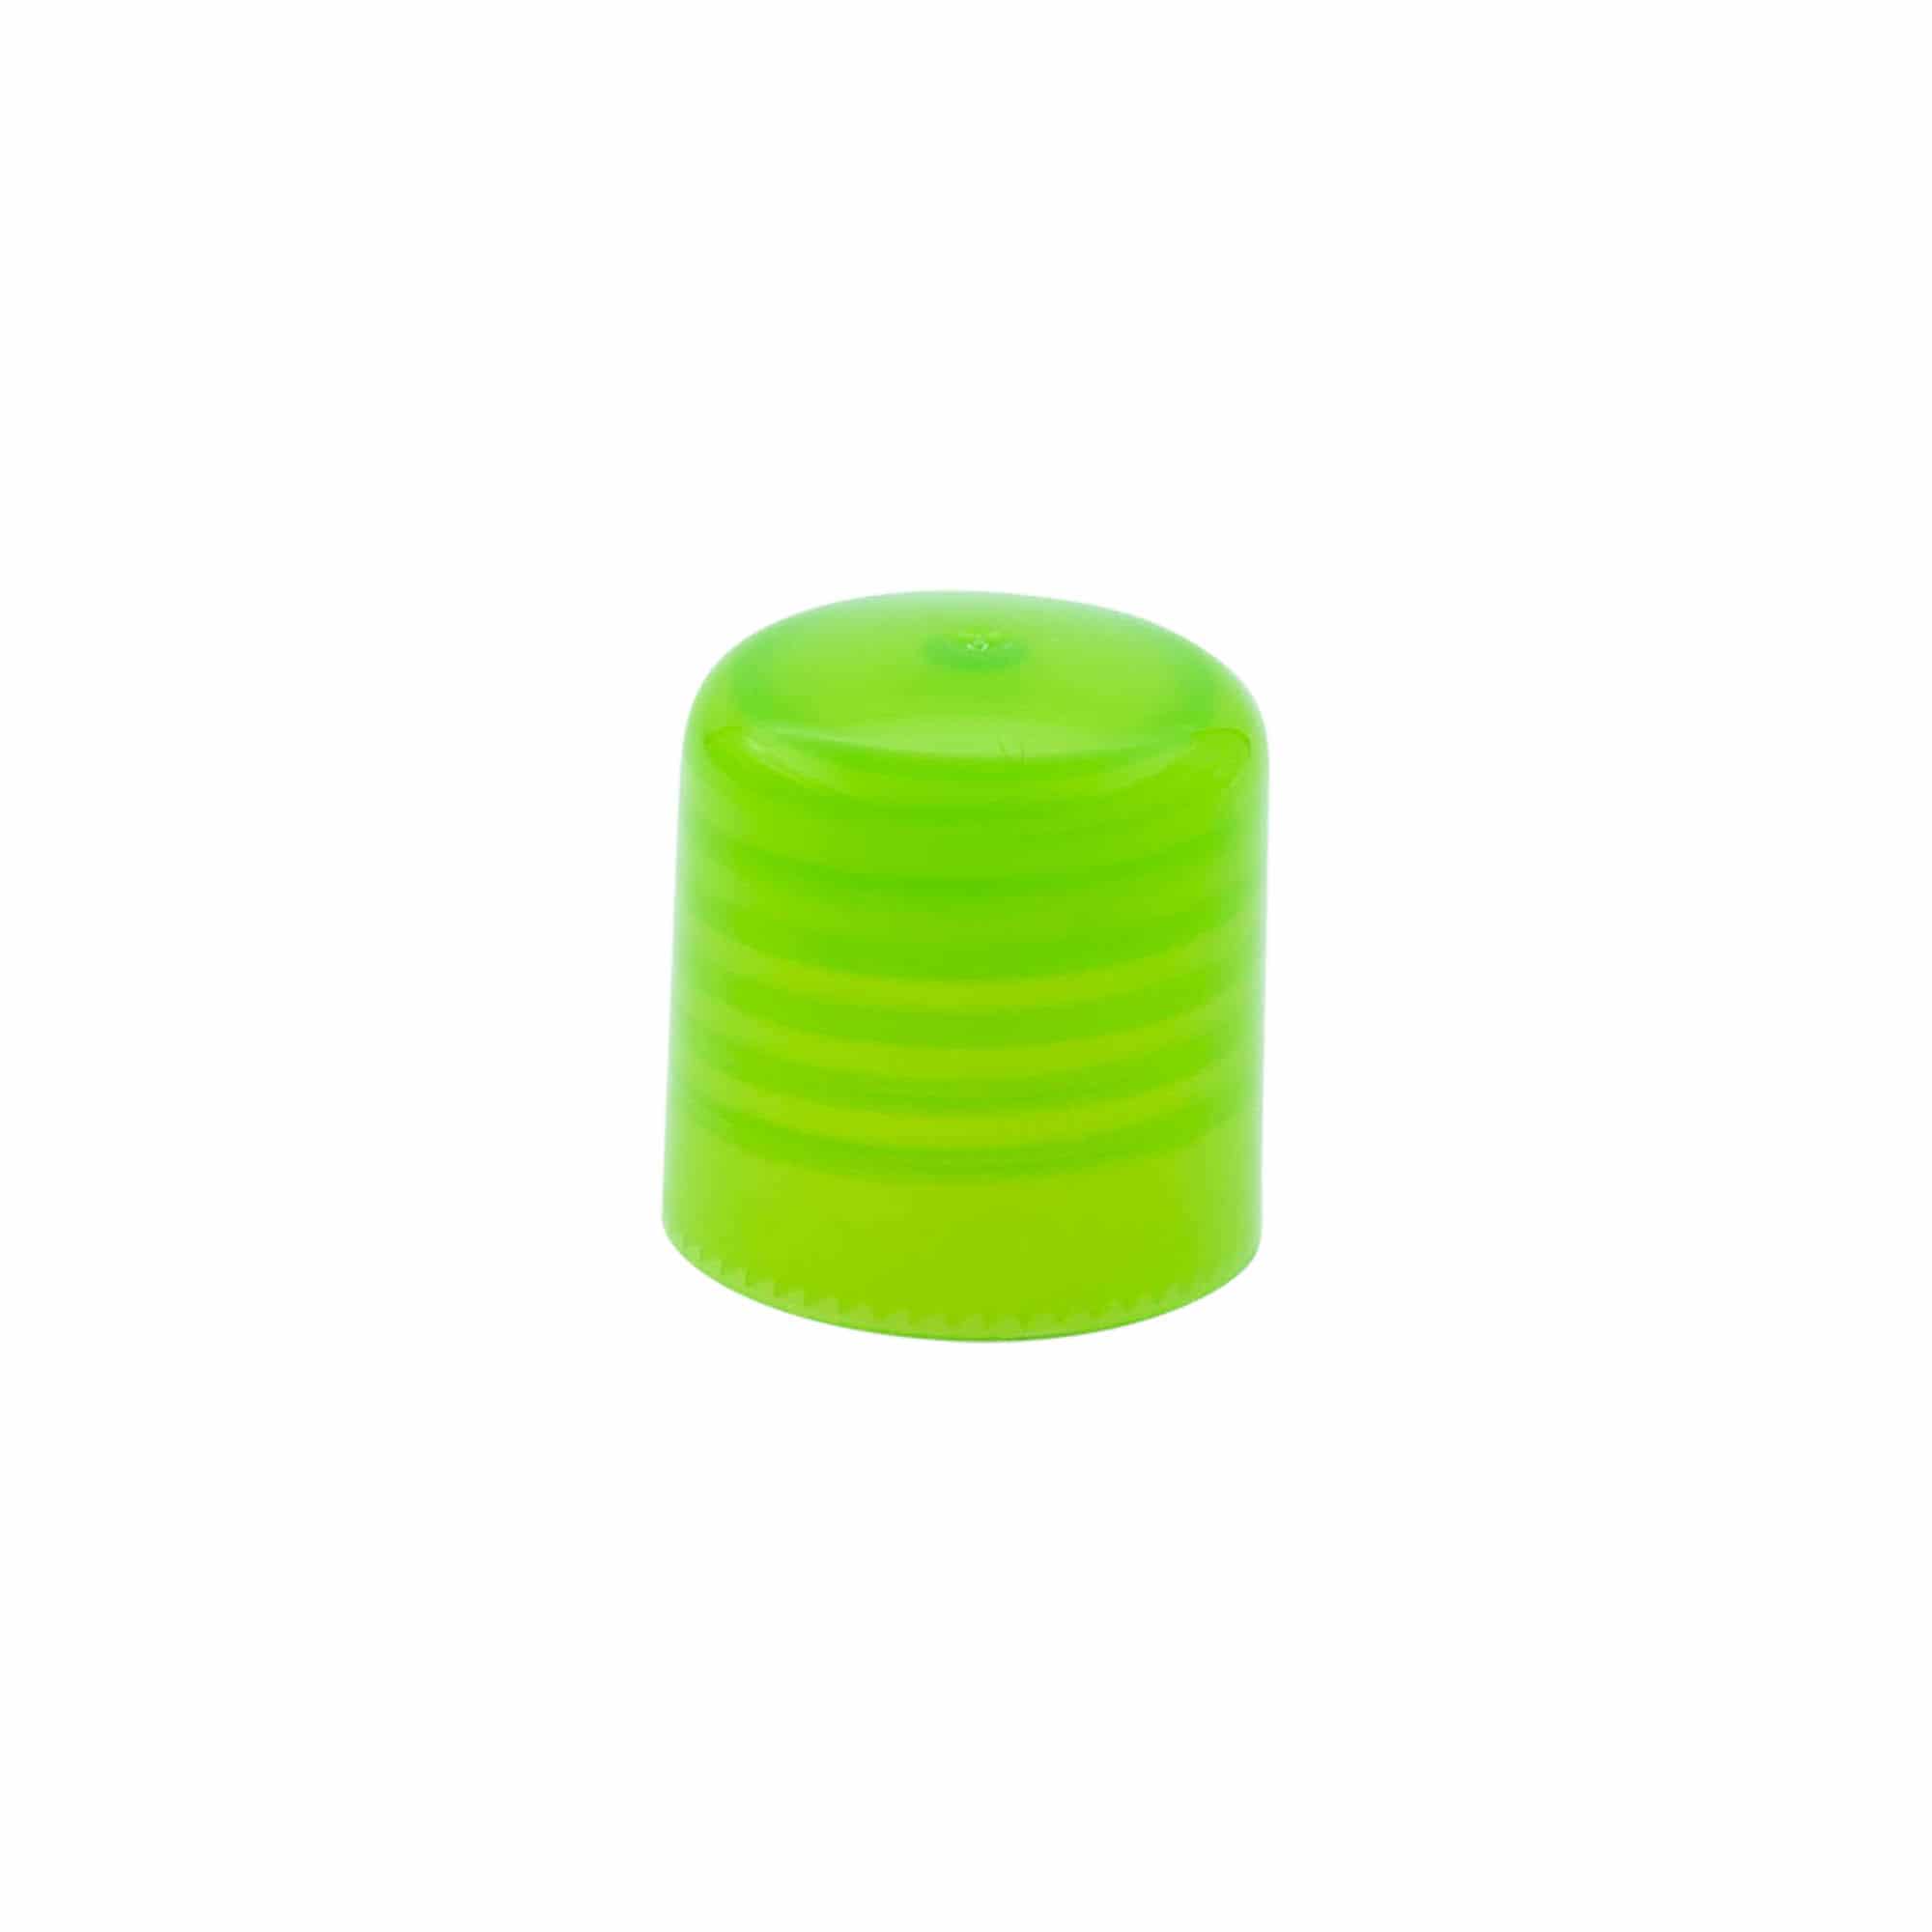 Schraubverschluss mit Spritzeinsatz, PP-Kunststoff, grün, für Mündung: GPI 24/410